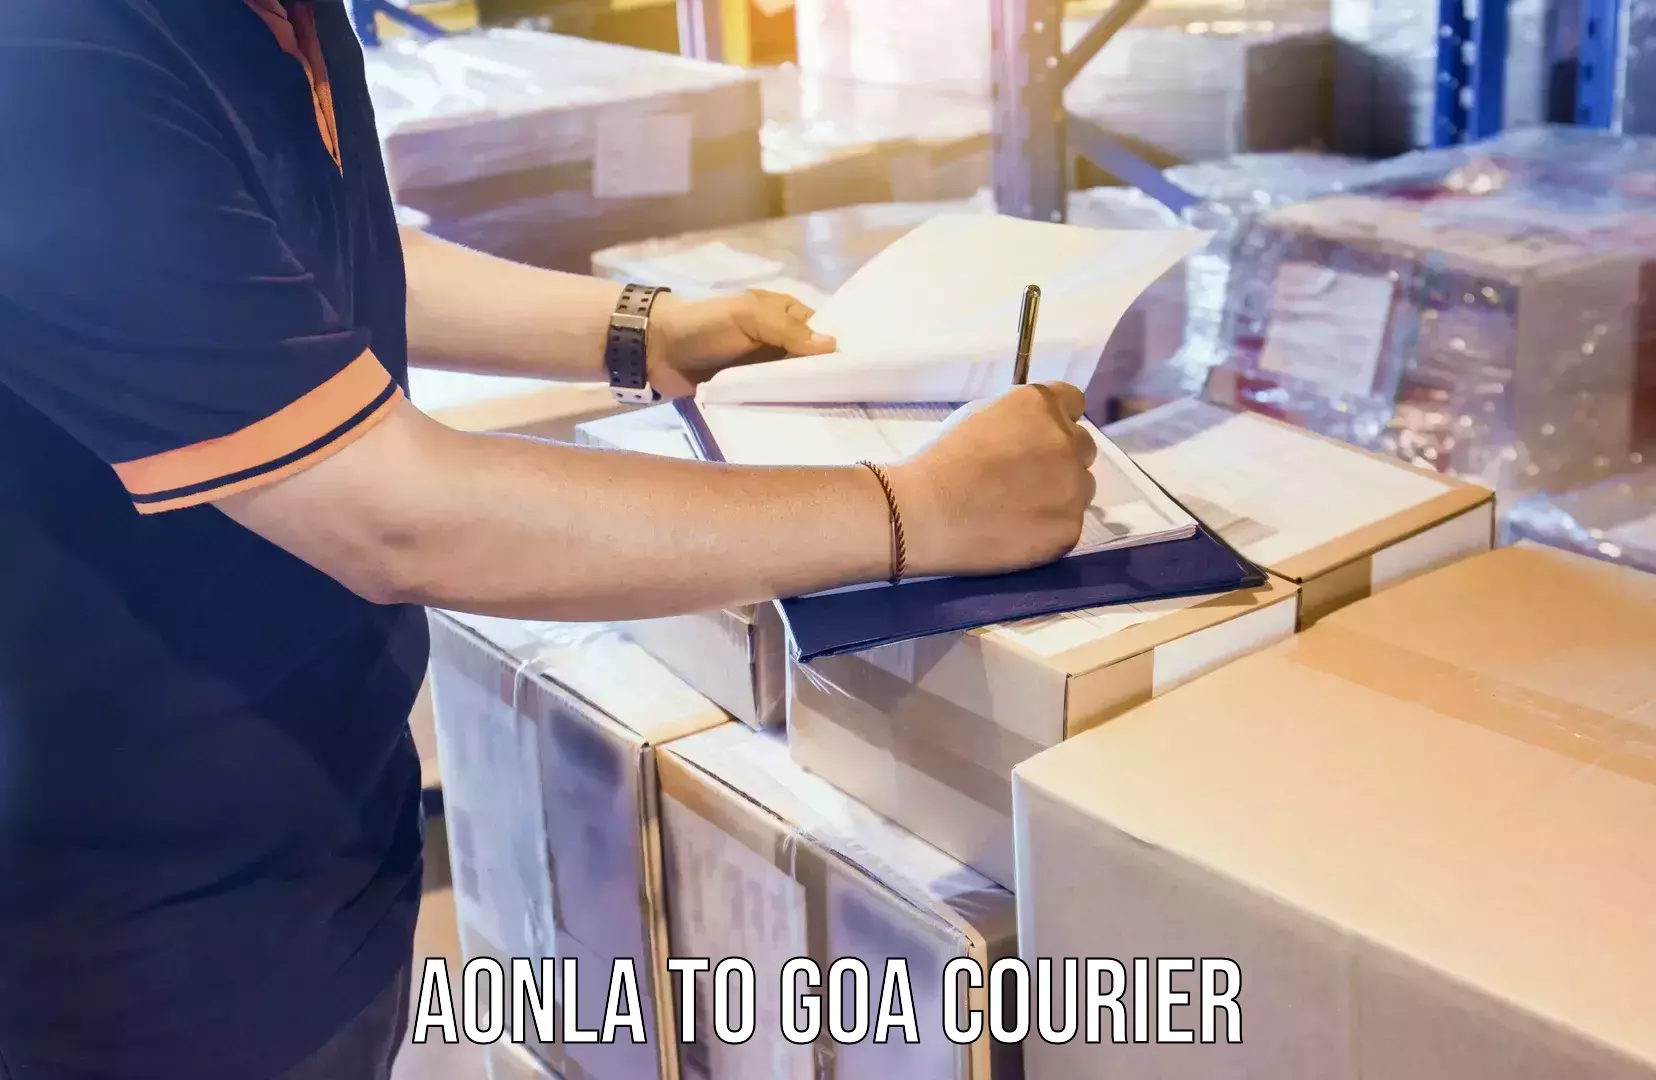 Express courier capabilities Aonla to Goa